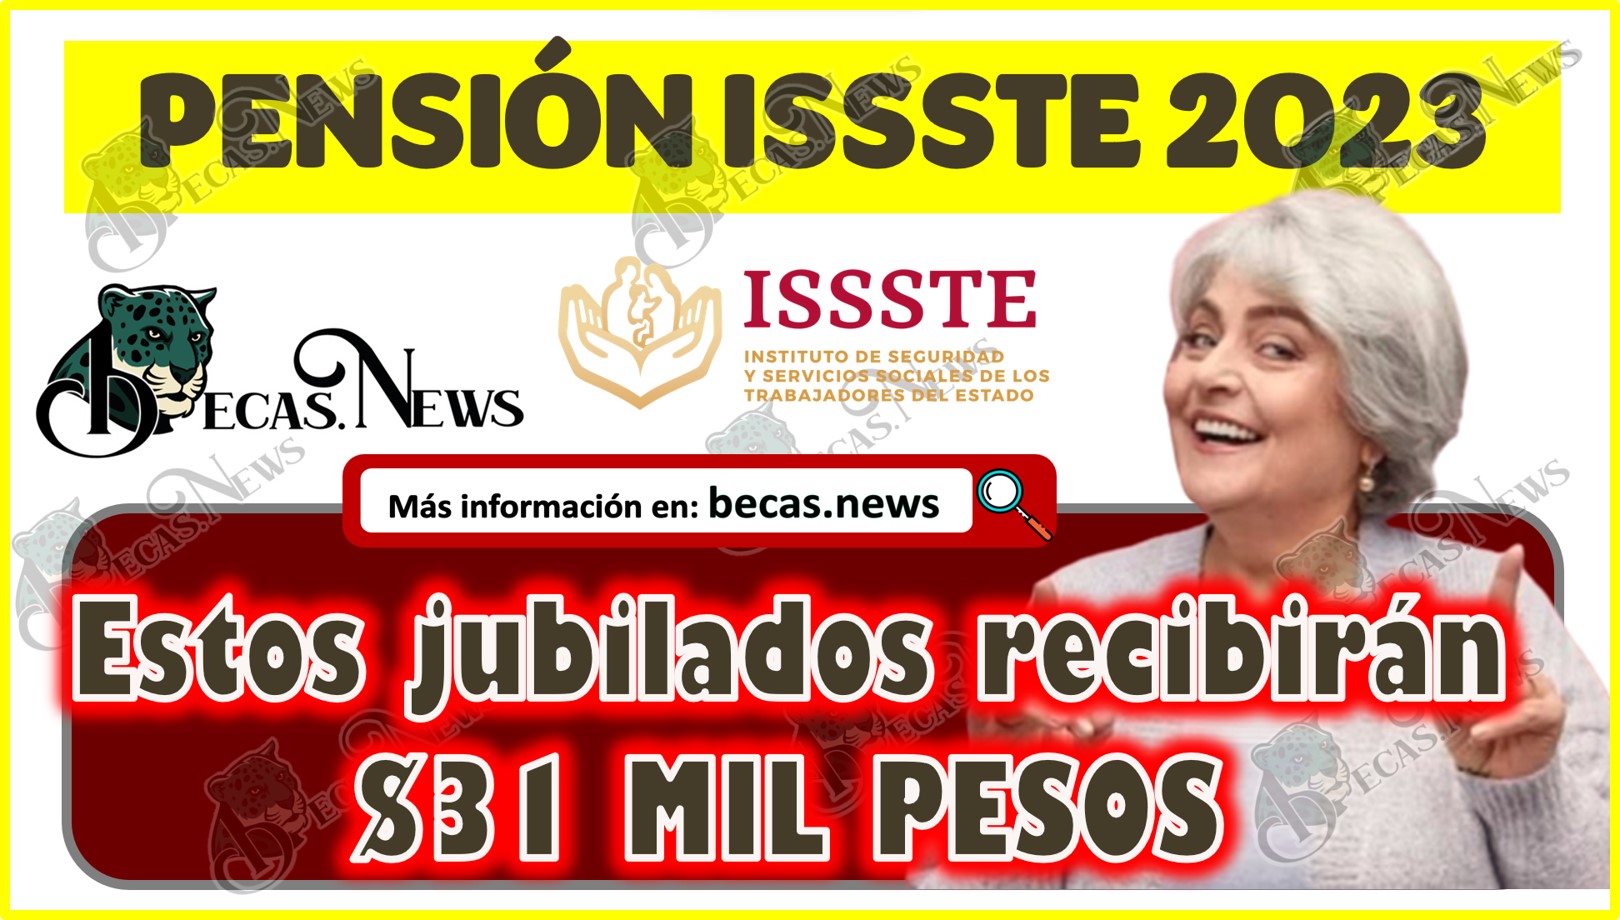 Pensión ISSSTE 2023 | Estos jubilados recibirán $31 MIL PESOS